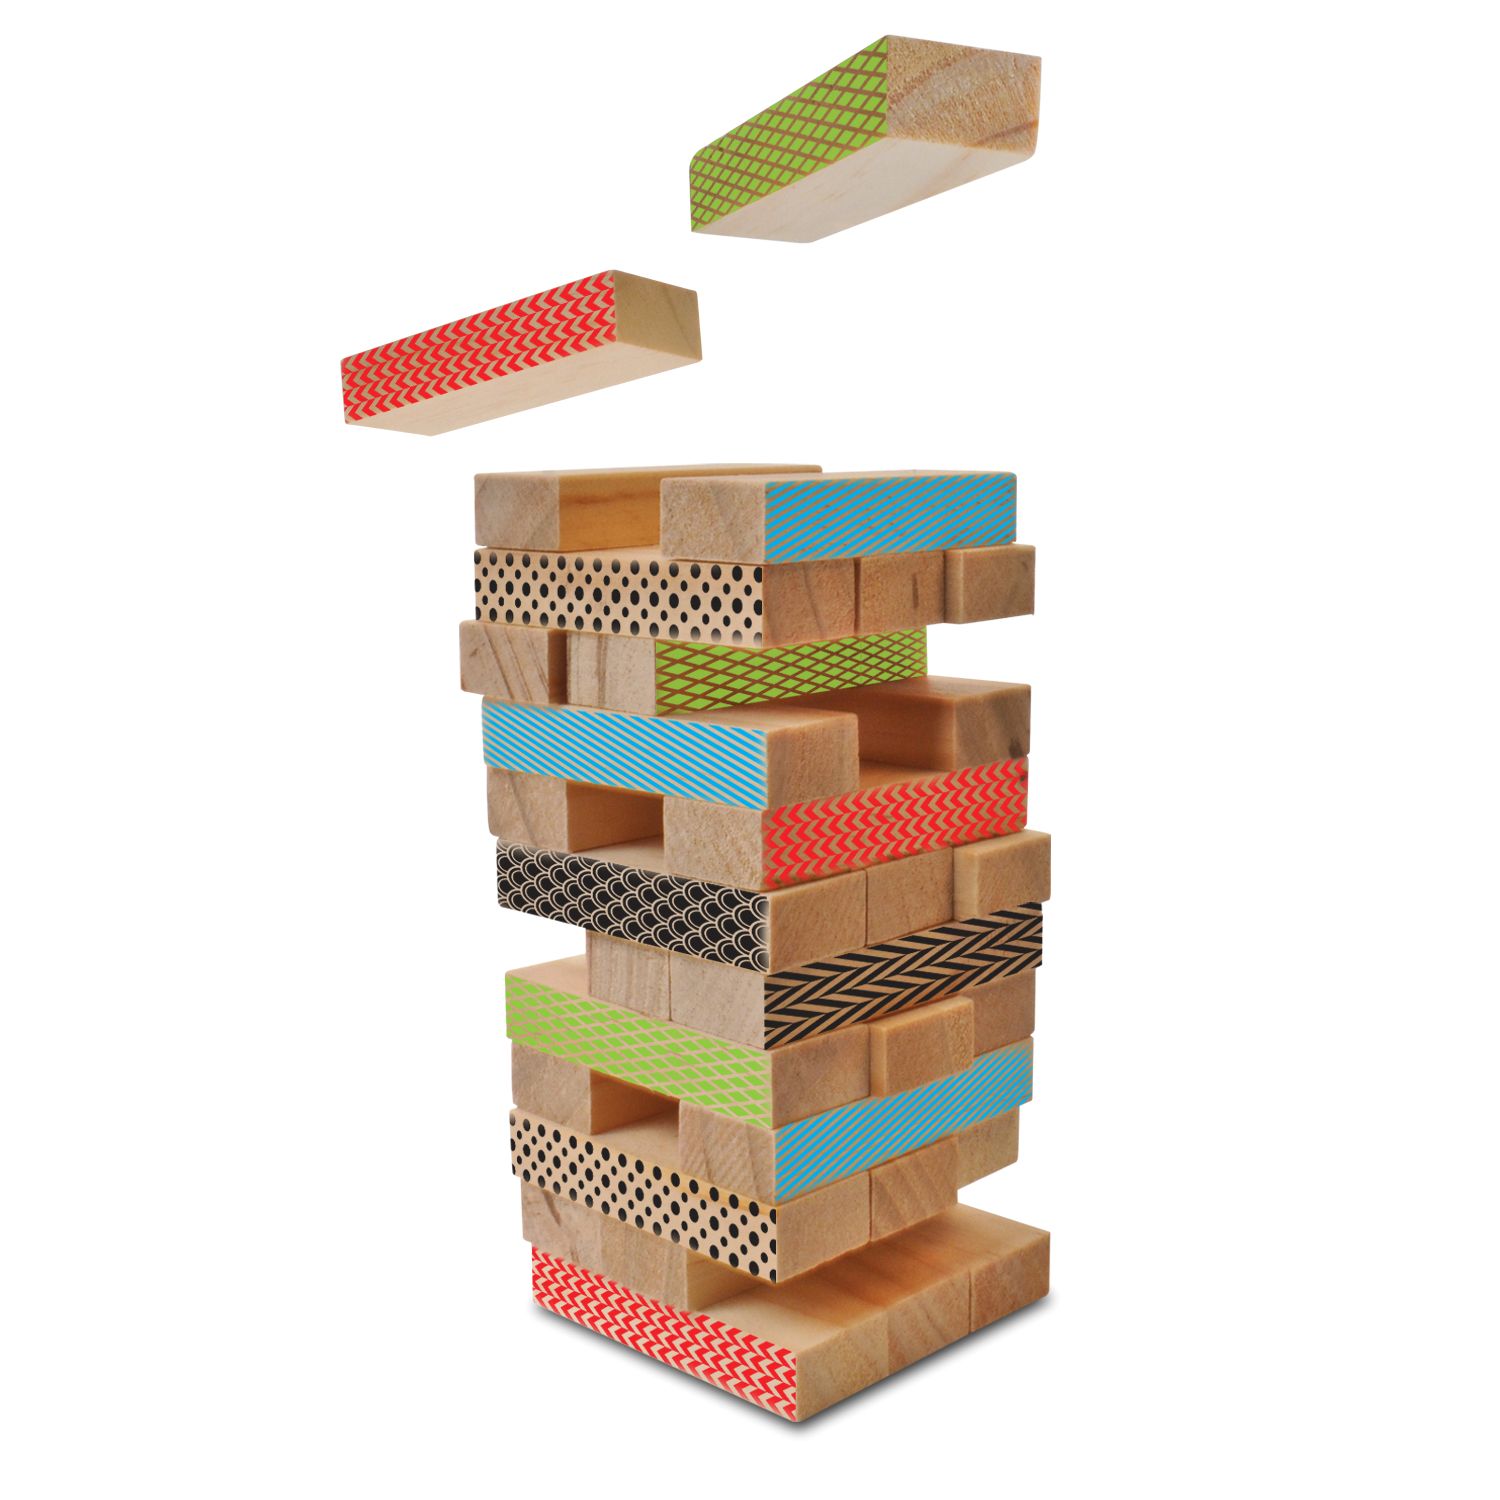 wooden stacking blocks